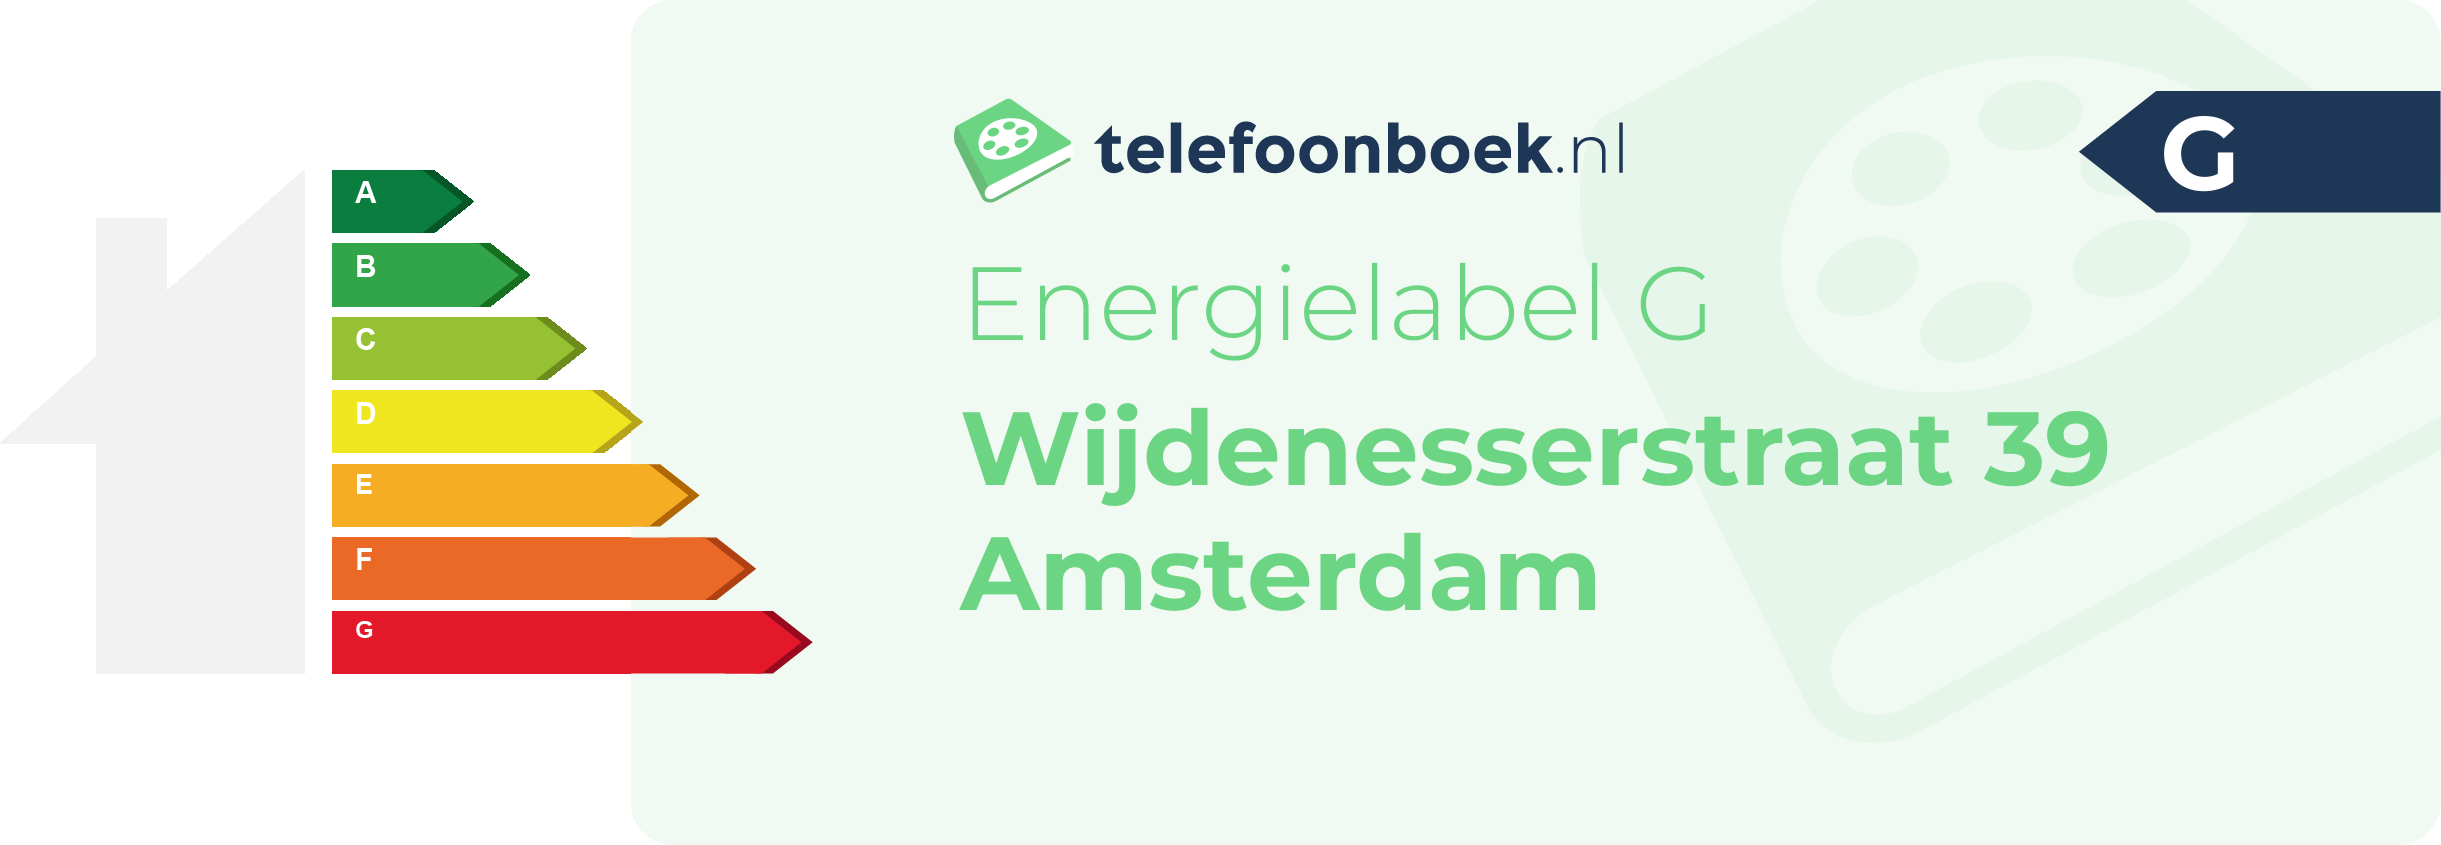 Energielabel Wijdenesserstraat 39 Amsterdam